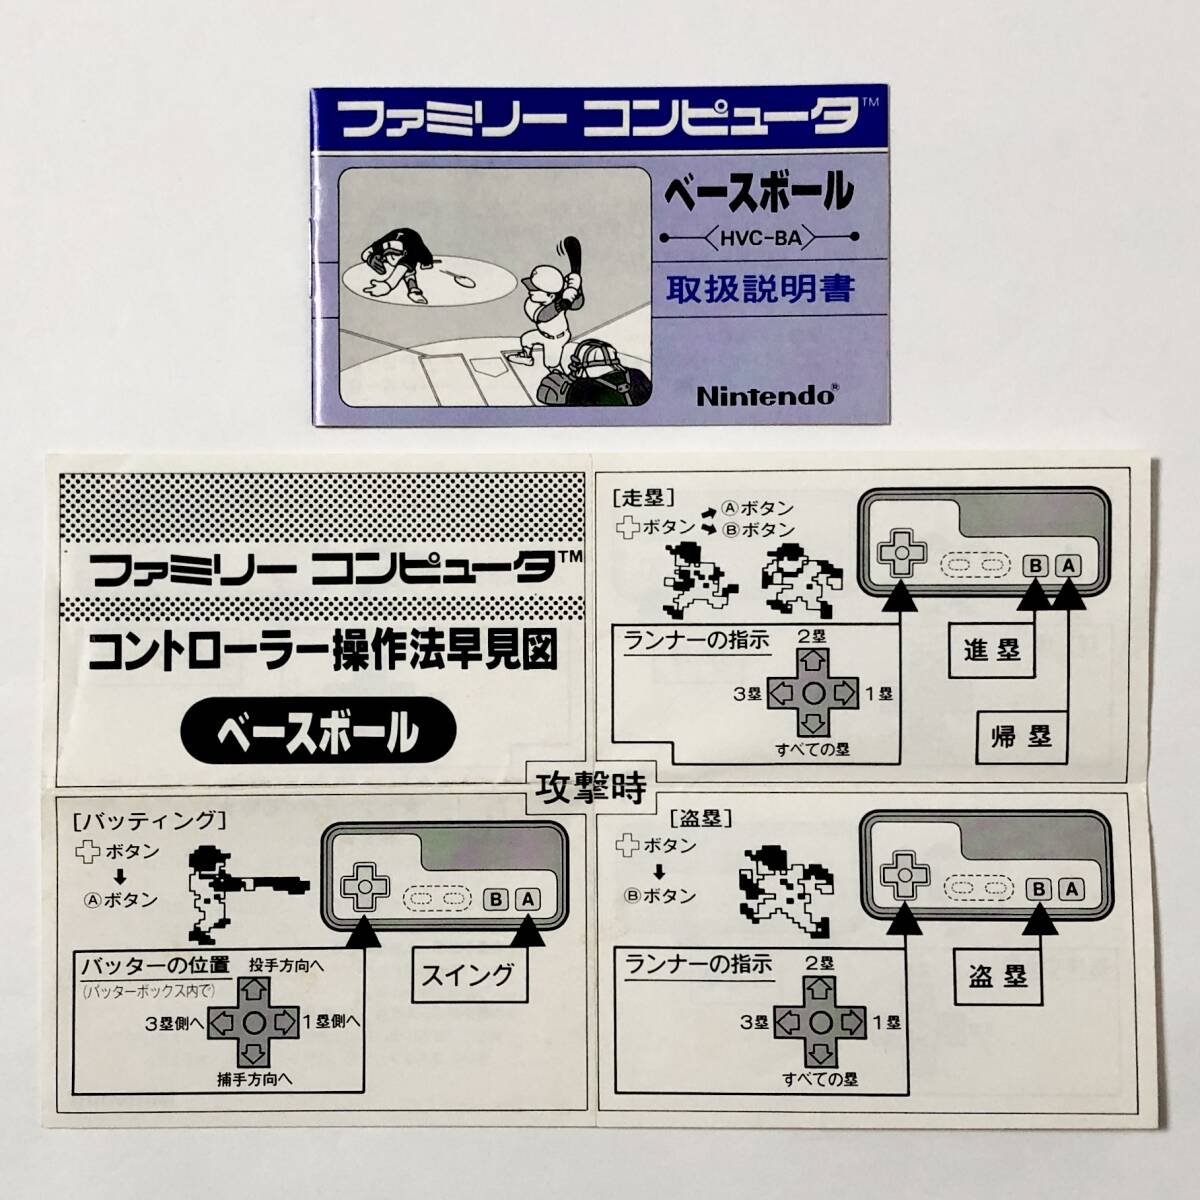 ファミコン ベースボール 小箱版 箱説付き 痛みあり 操作法早見図付き Nintendo Famicom Baseball Small Box Version CIB Tested_画像9